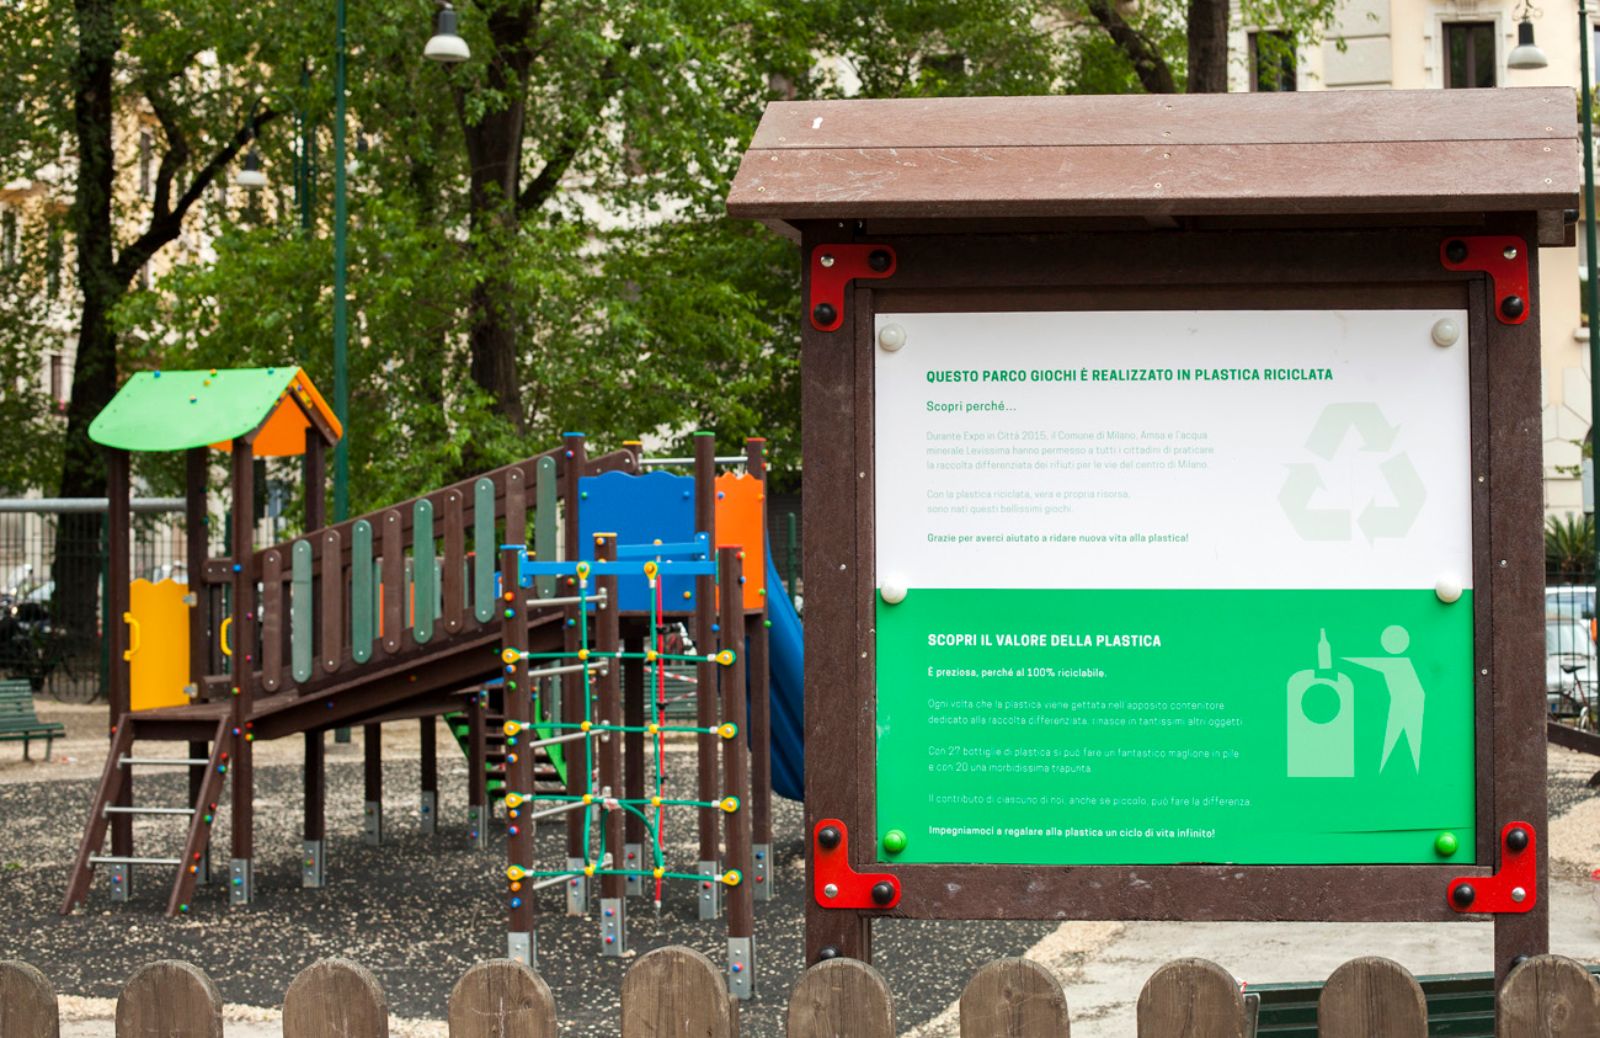 A Milano un parco giochi in plastica riciclata grazie a Levissima